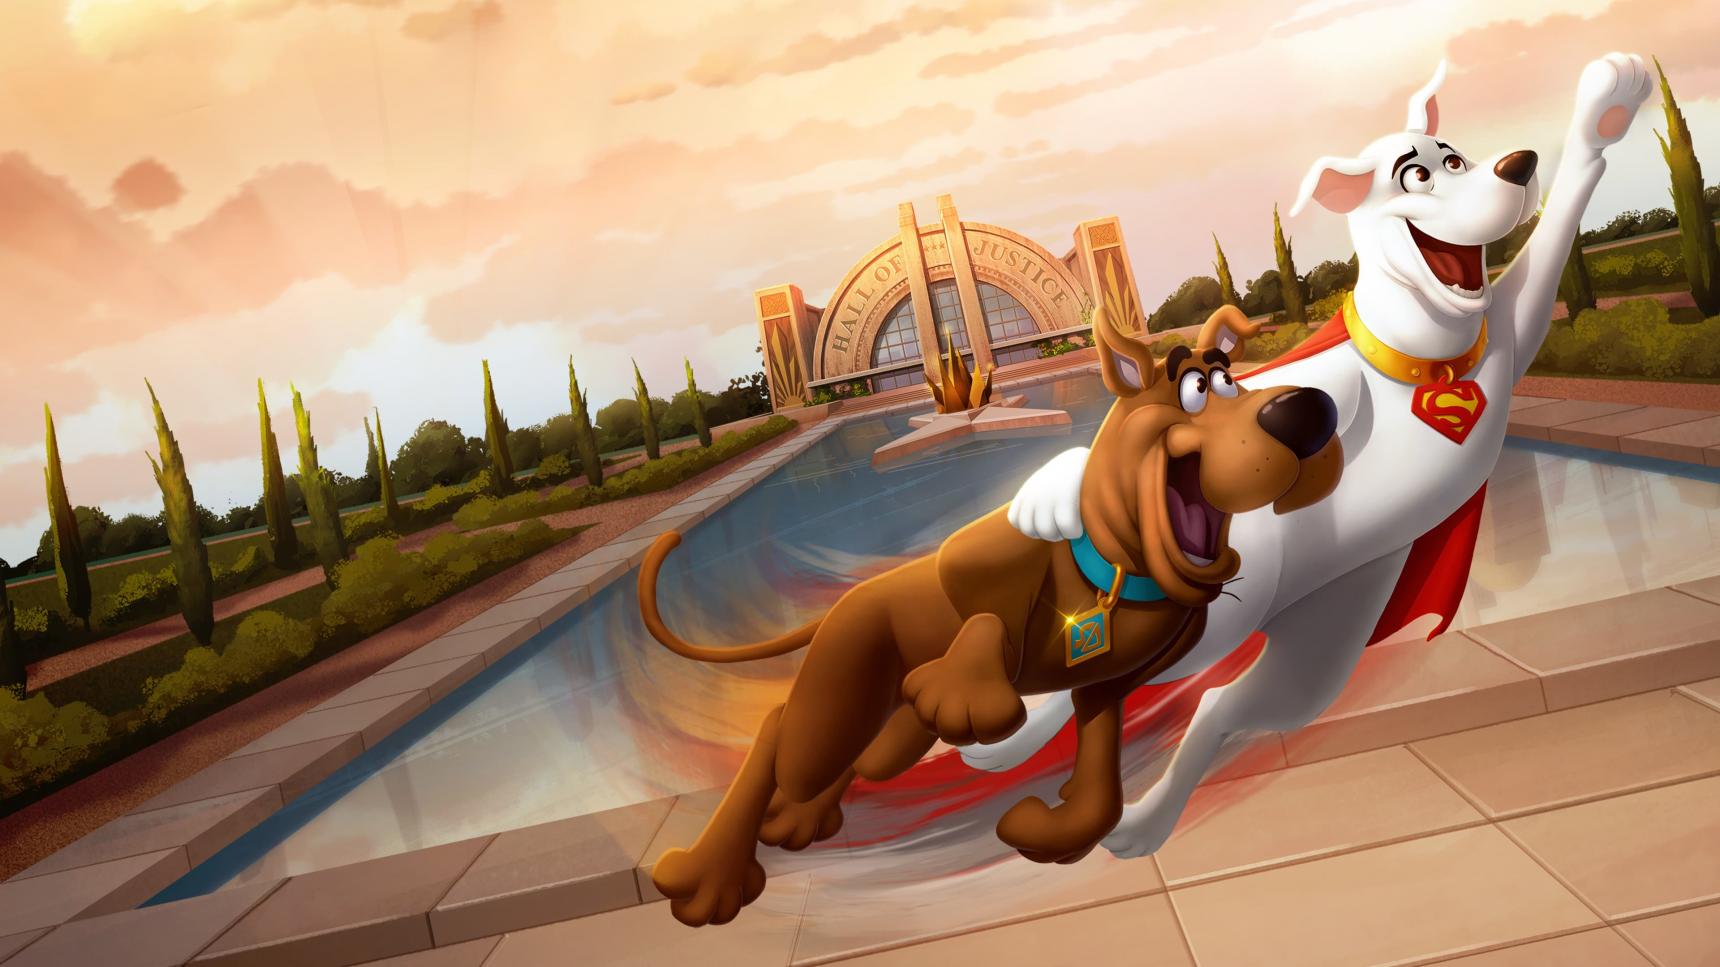 Fondo de pantalla de la película ¡Scooby Doo! ¡Y Krypto también! en Cuevana 3 gratis